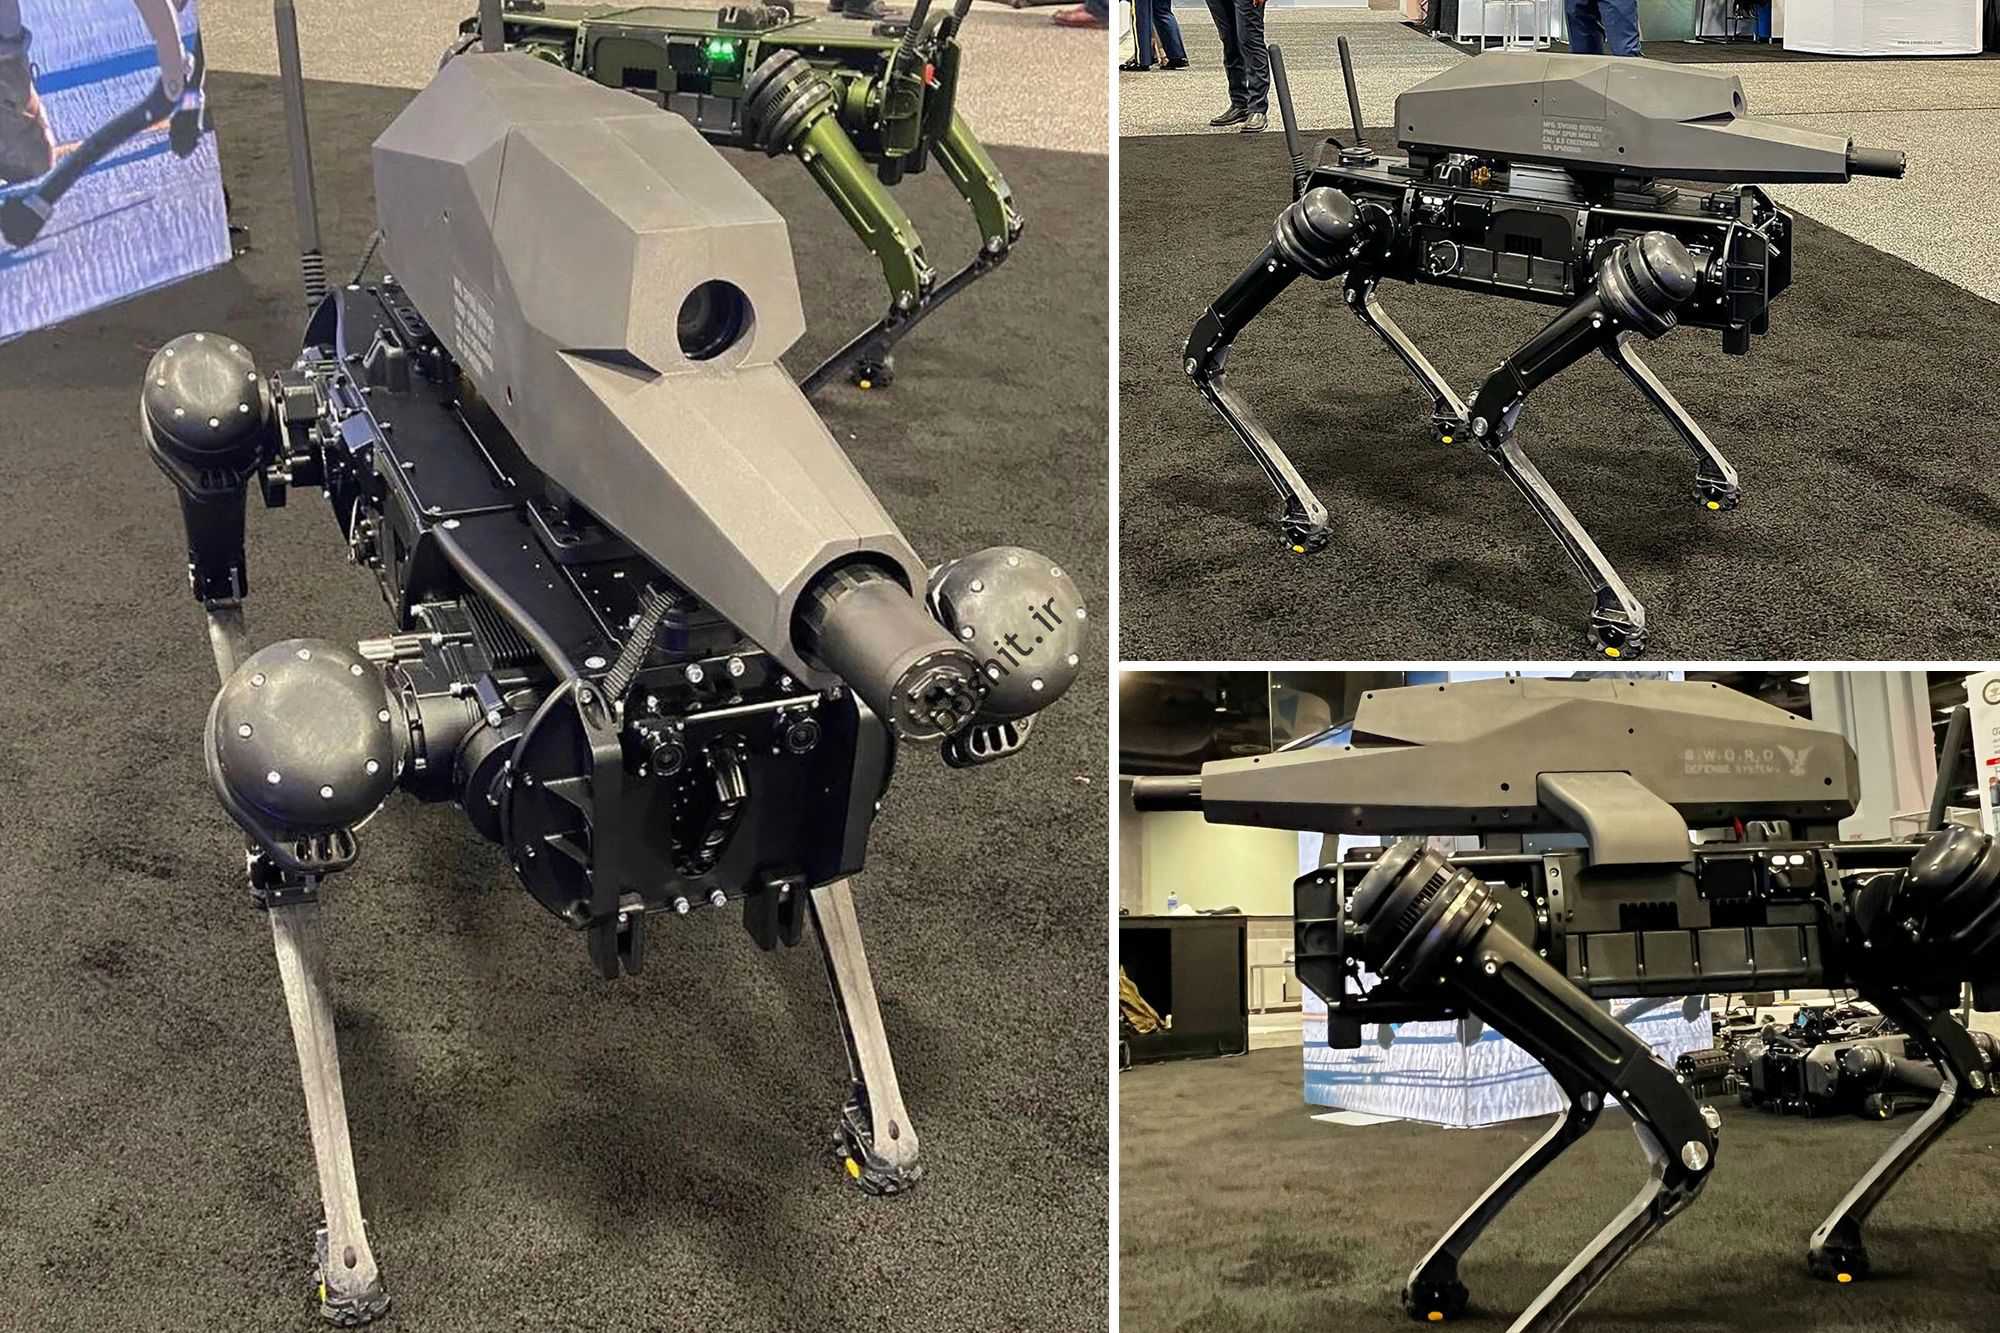 سگ رباتیک Vision 60 توسط استارتاپ Ghost Robotics مستقر در فیلادلفیا ساخته شد که بر روی ربات های پا متمرکز است.